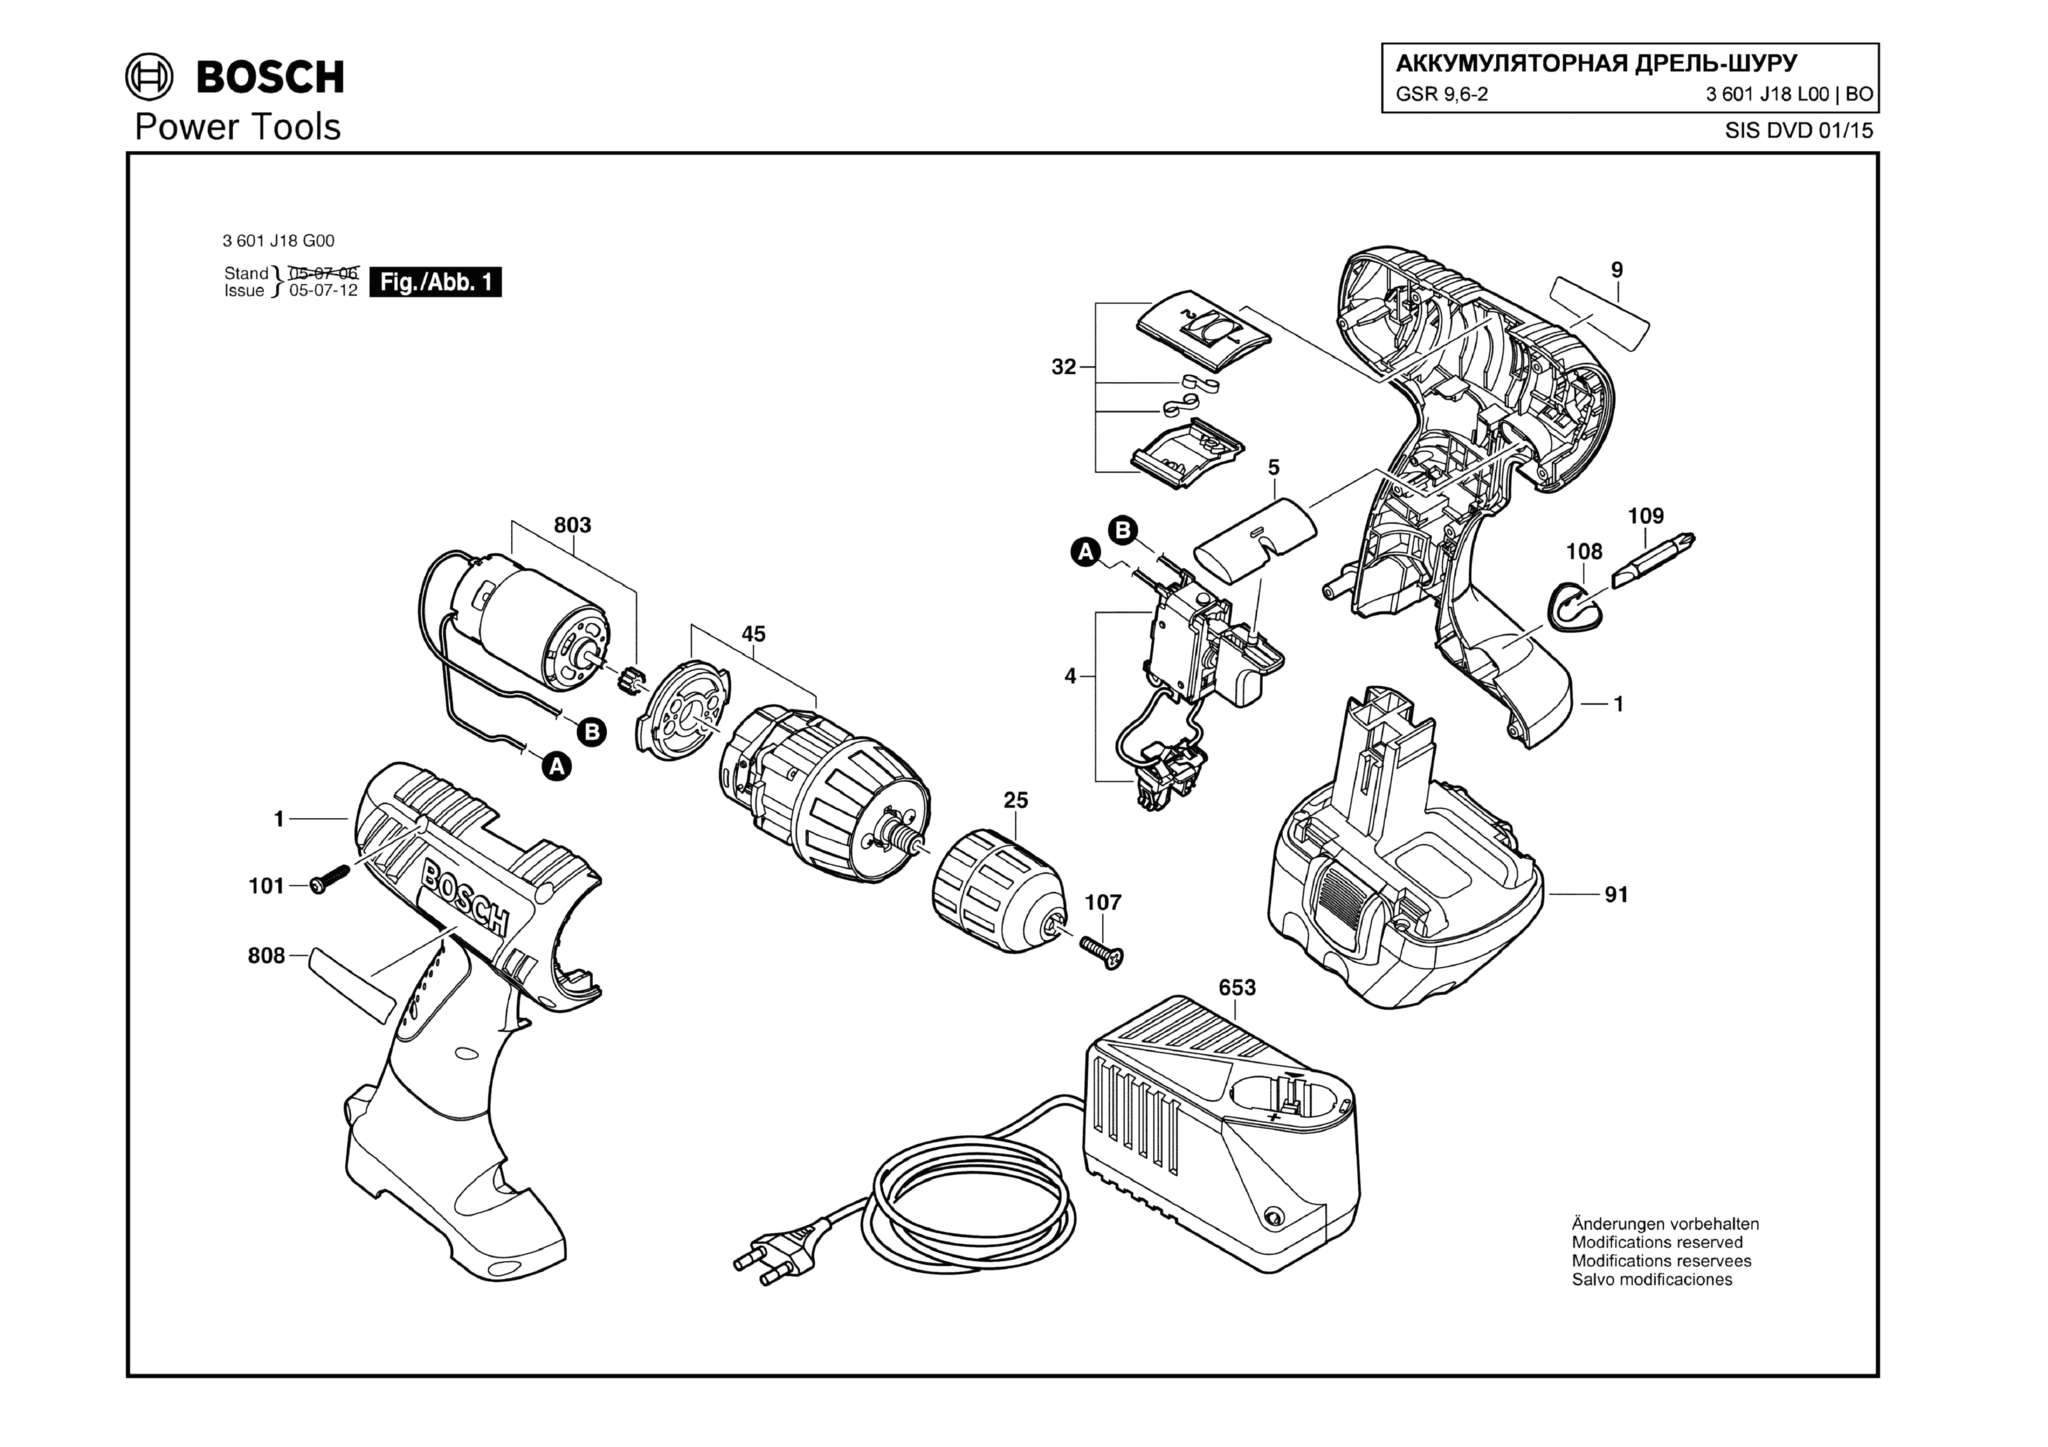 Запчасти, схема и деталировка Bosch GSR 9,6-2 (ТИП 3601J18L00)